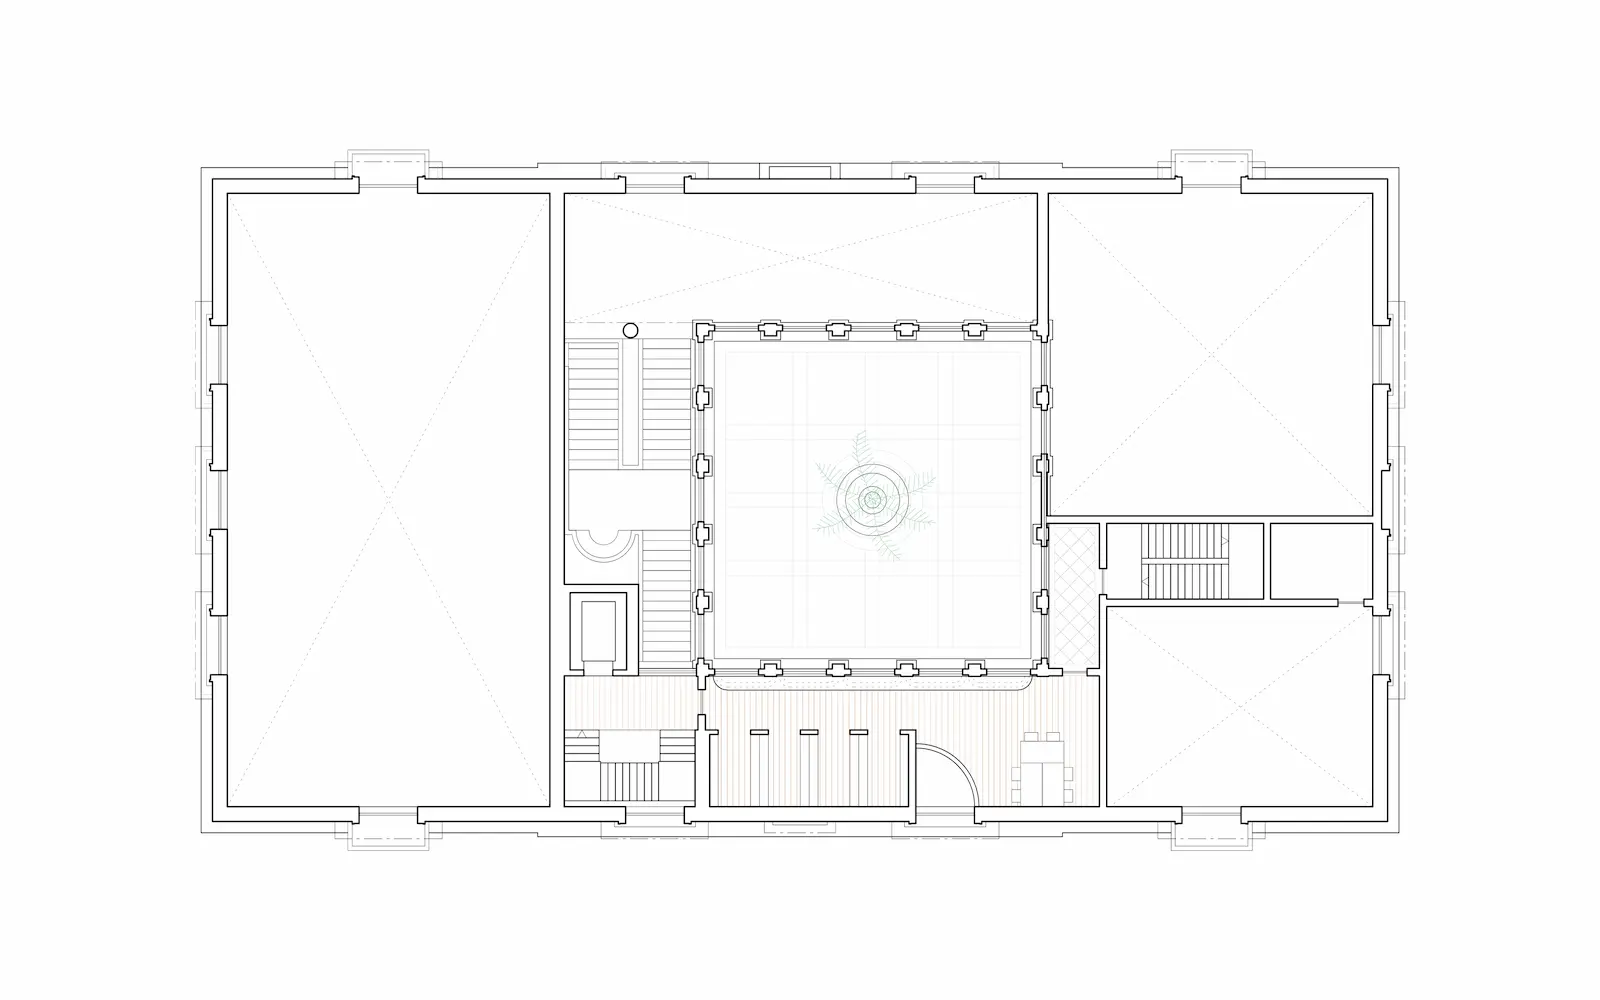 Second floor plan of museum